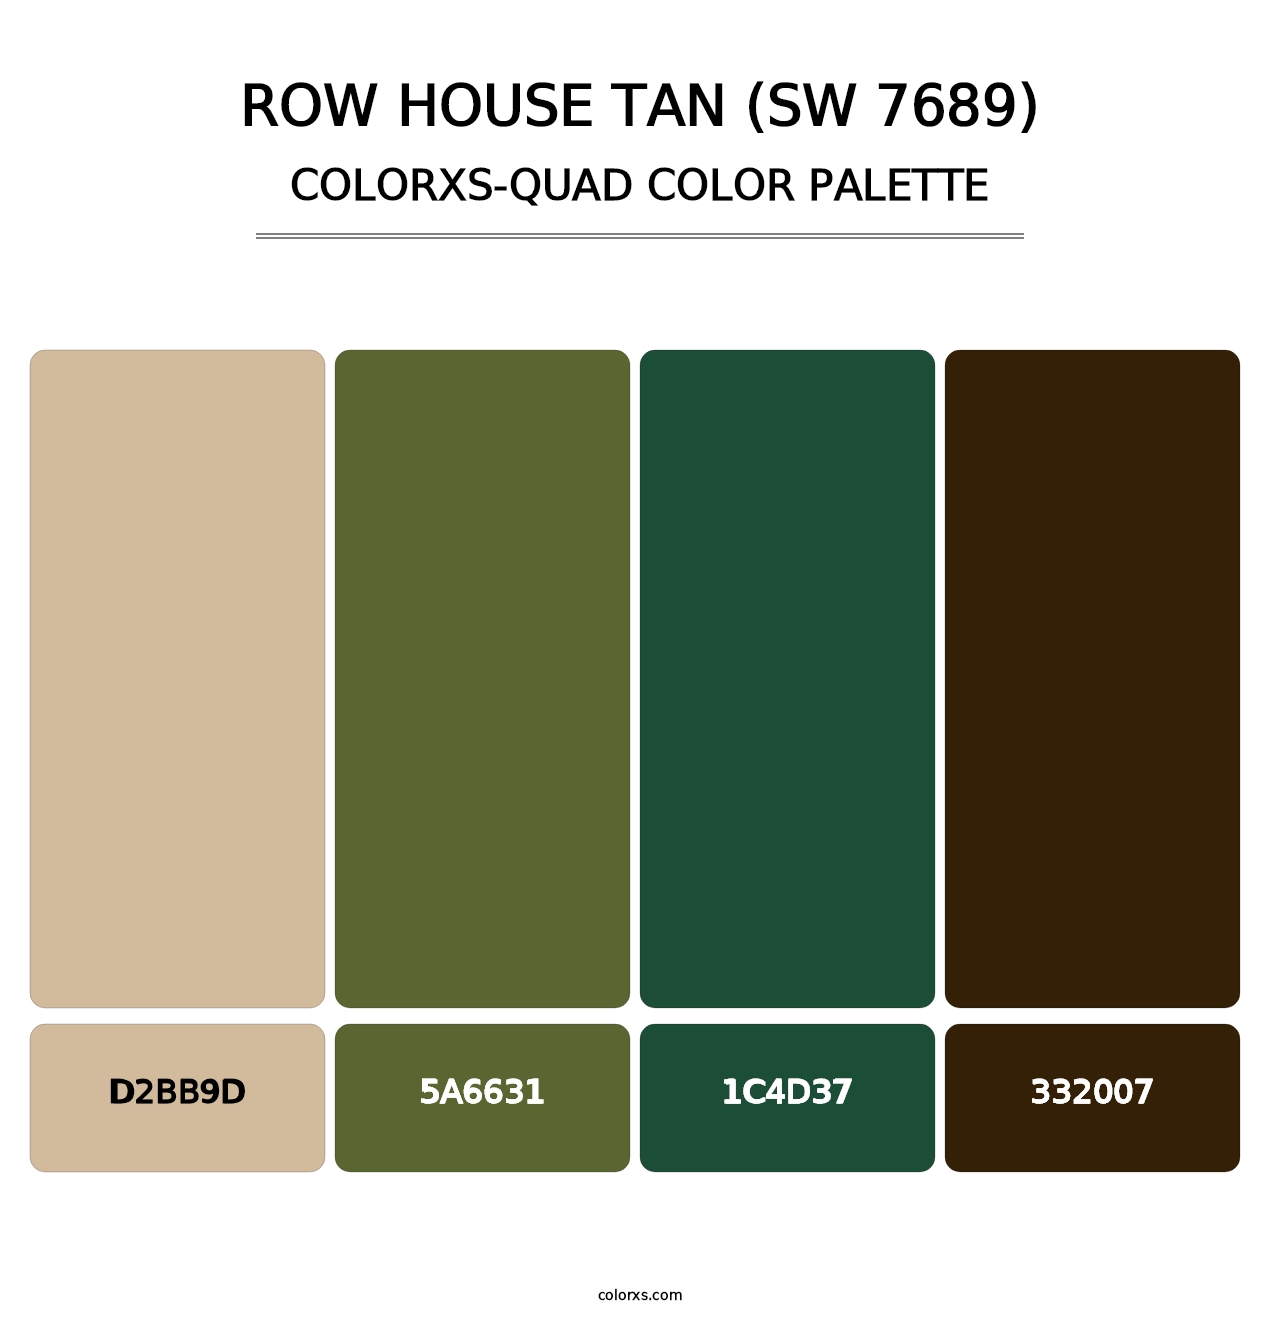 Row House Tan (SW 7689) - Colorxs Quad Palette